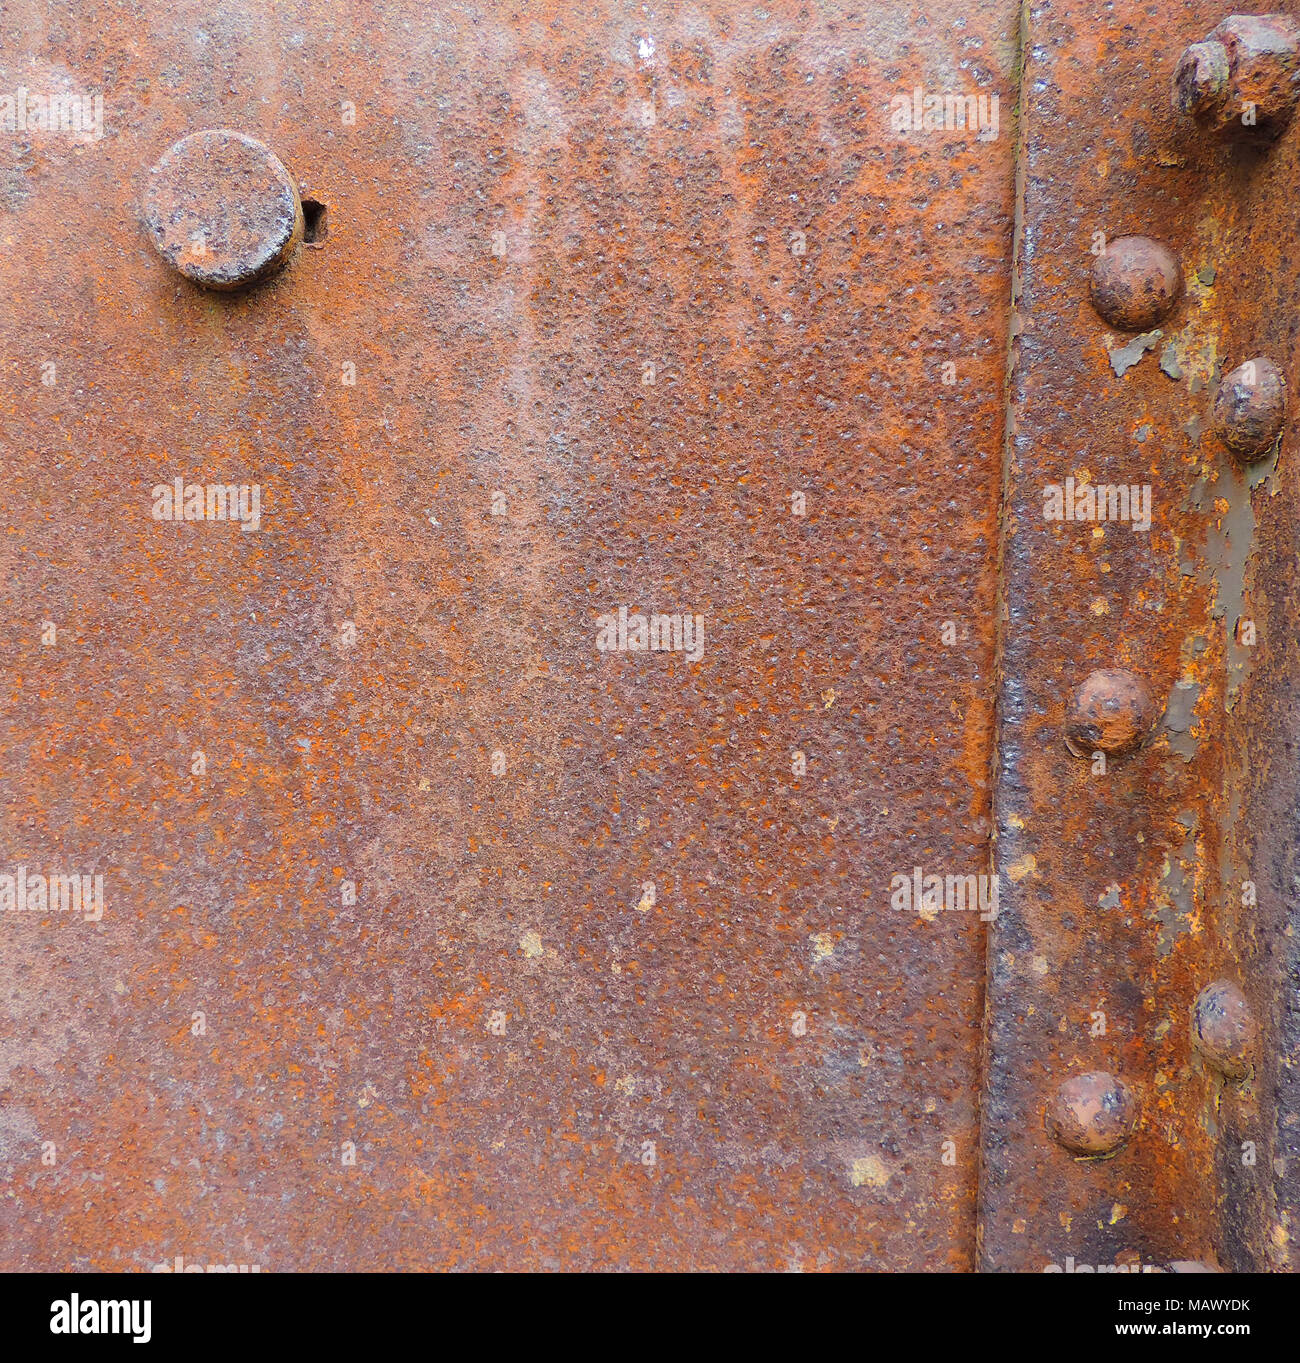 Chapa de hierro oxidado o fondo de metal envejecido con espacio de copia. Foto de stock